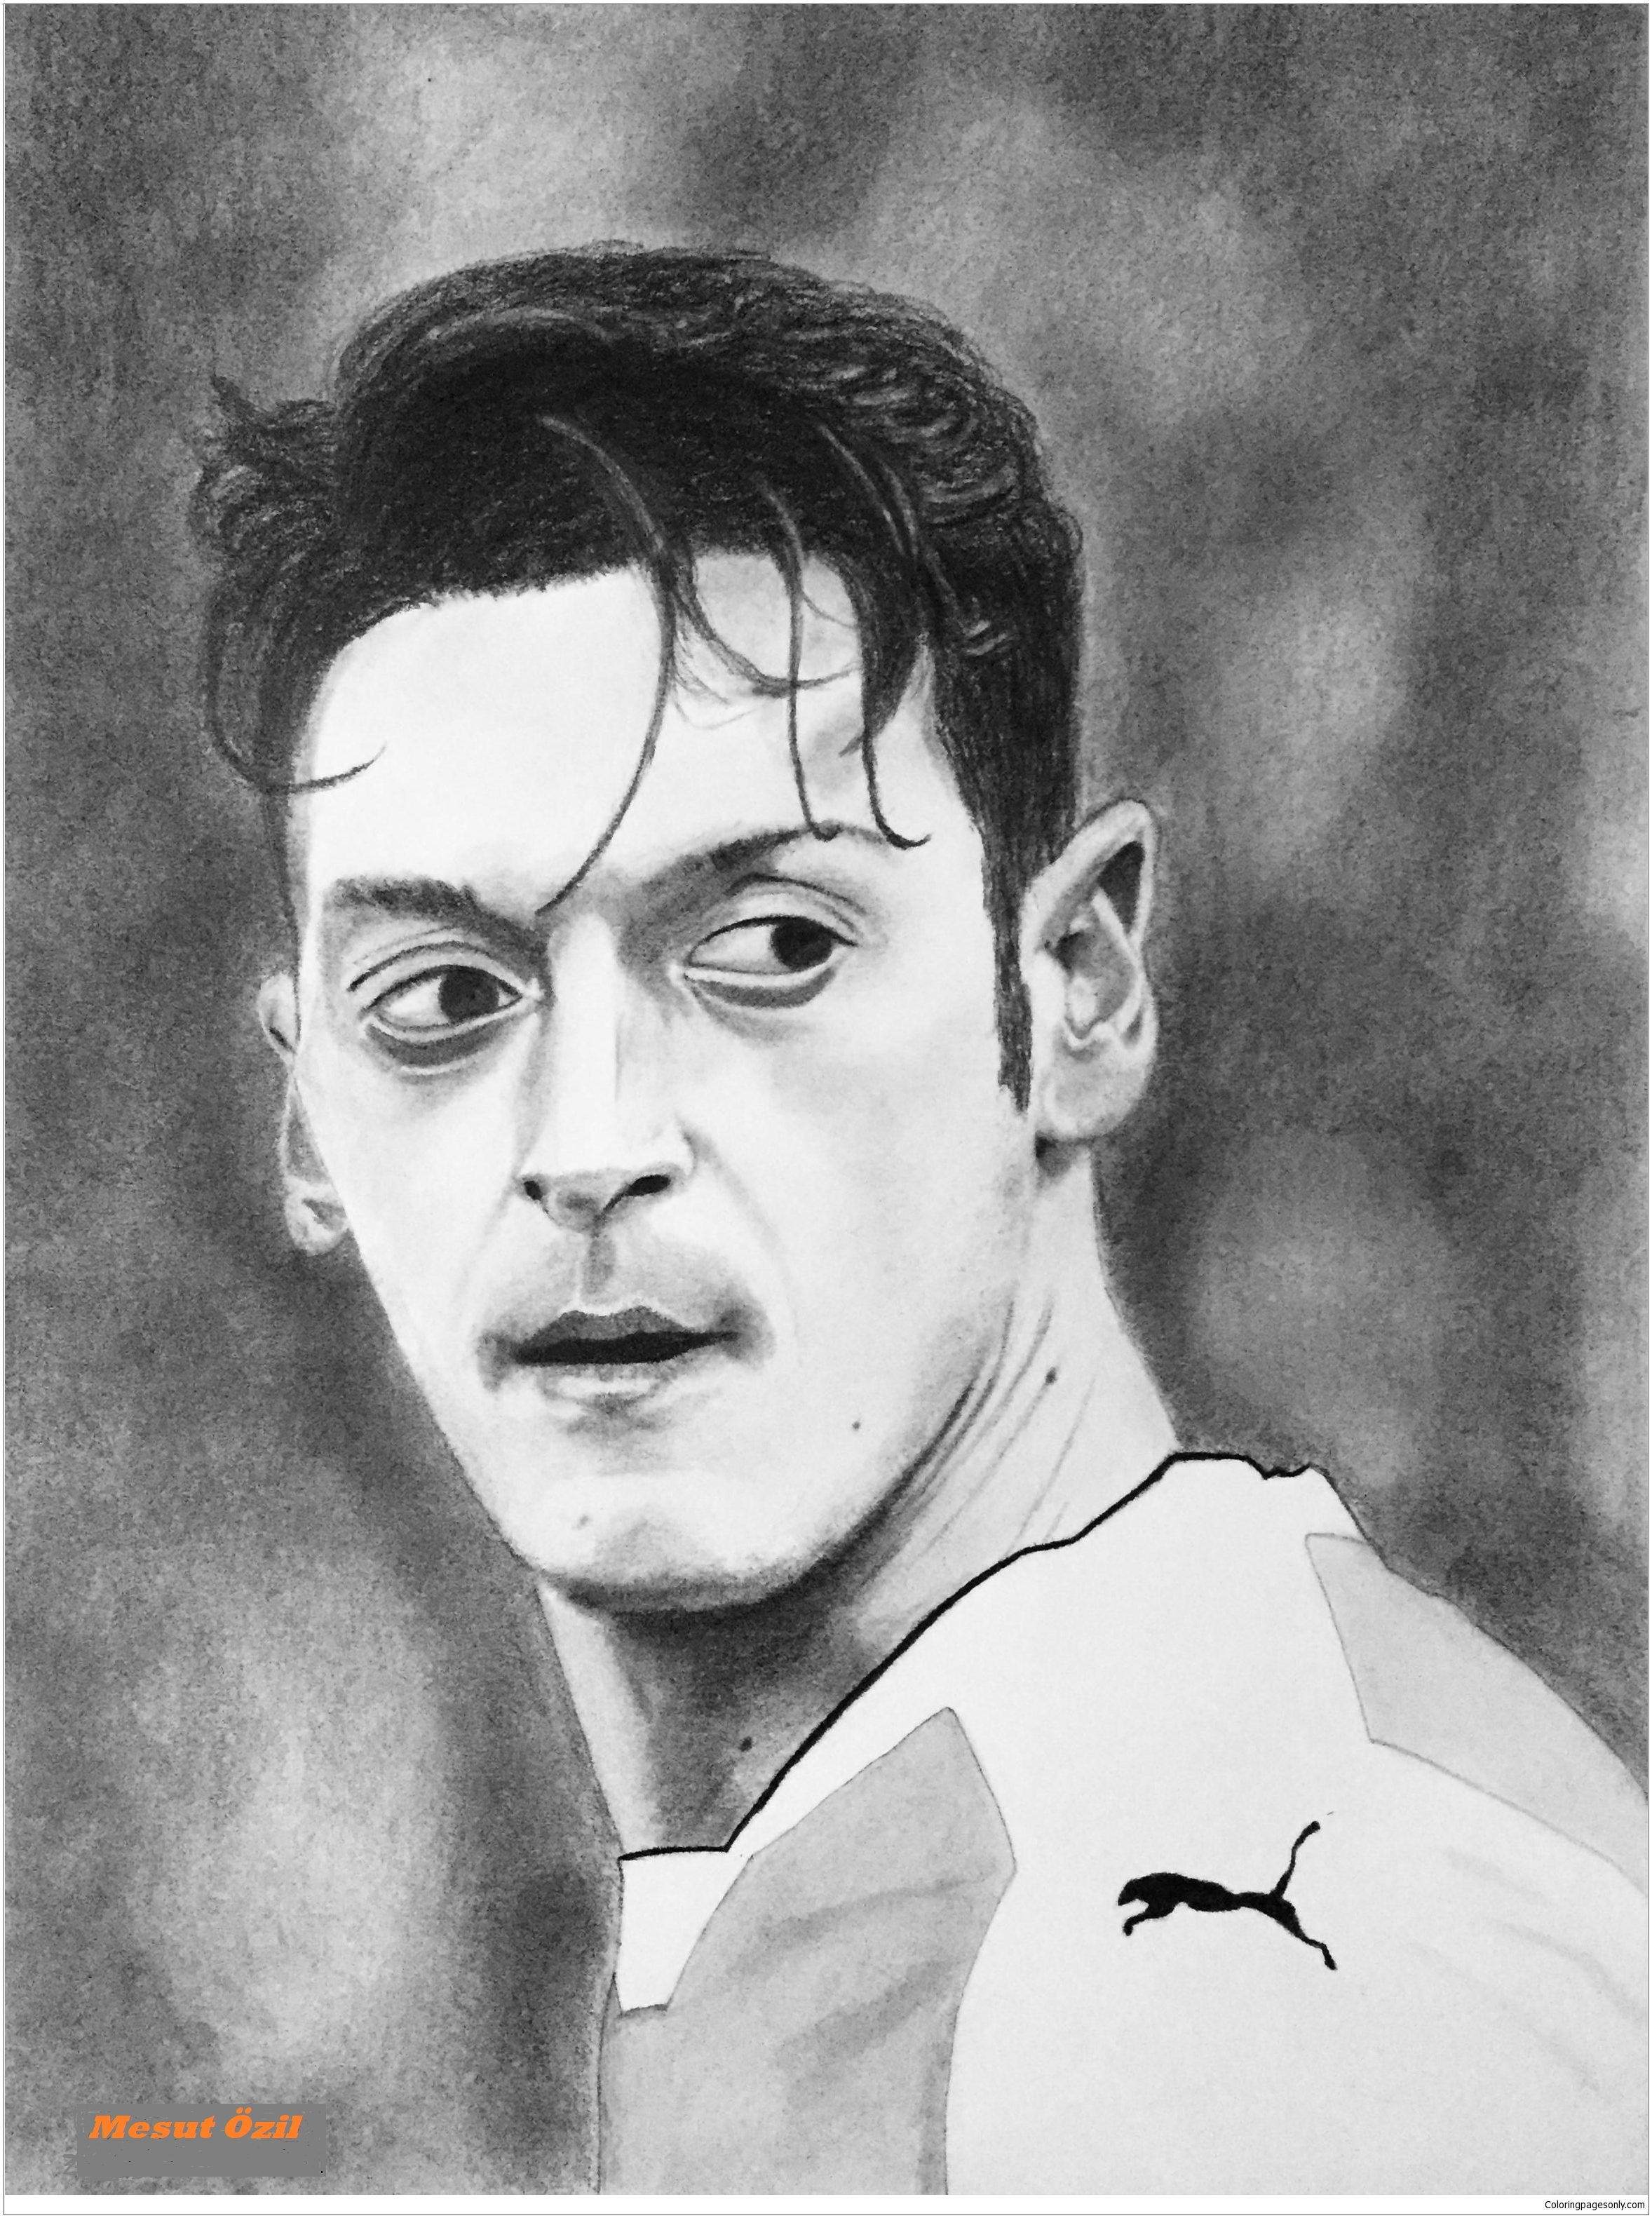 Mesut Özil-image 2 Coloring Pages